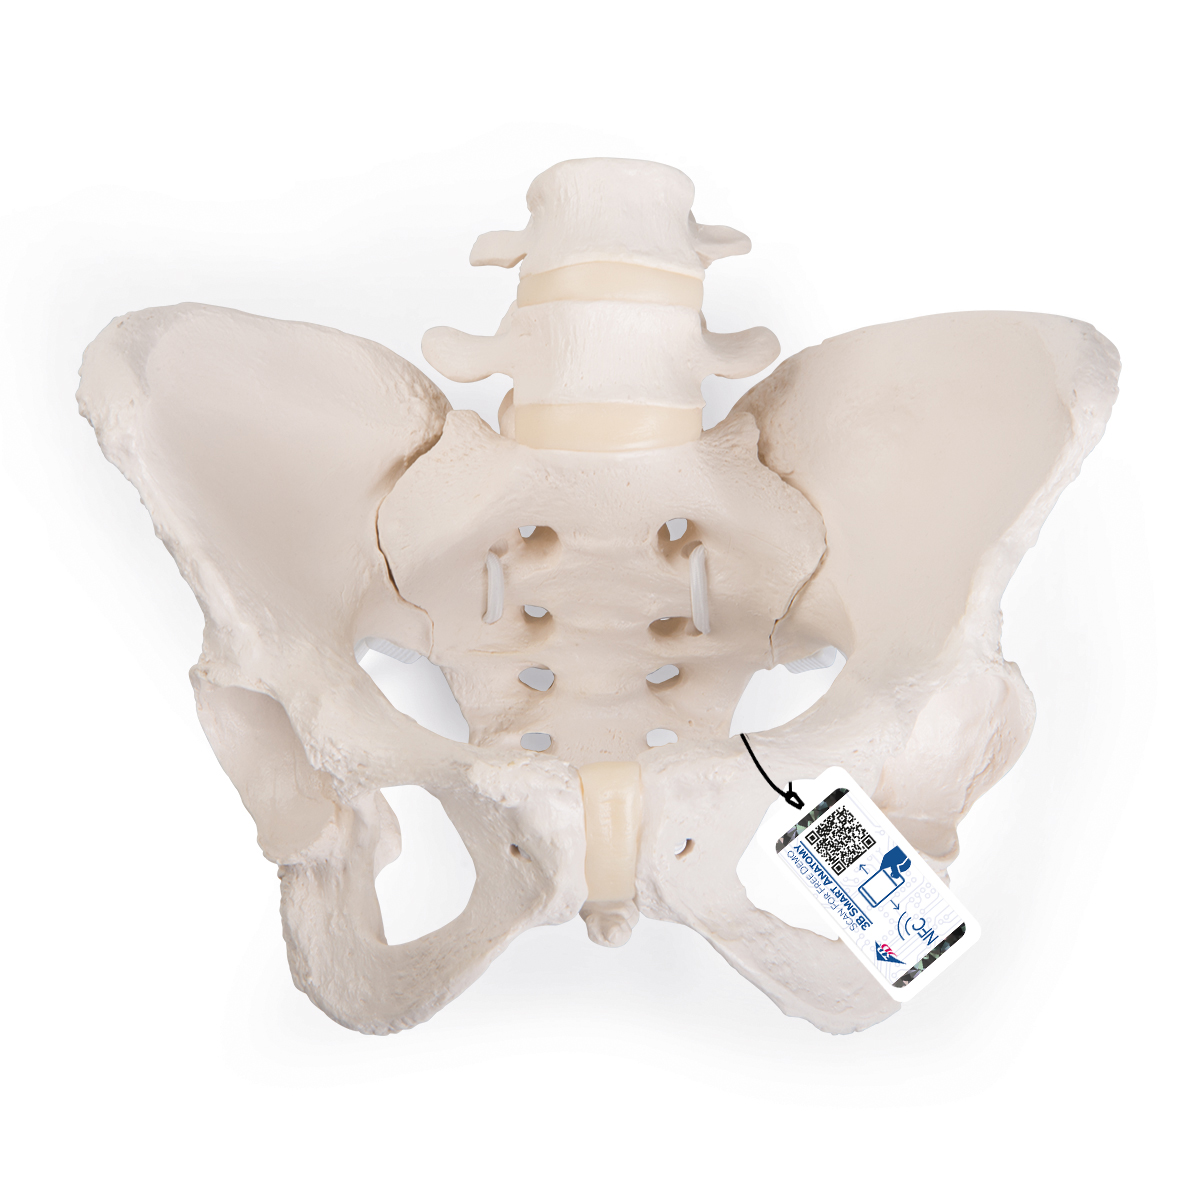 Flexibles Beckenknochen Modell "Bungee", weiblich - 3B Smart Anatomy, Bestellnummer 1019864, A61/1, 3B Scientific